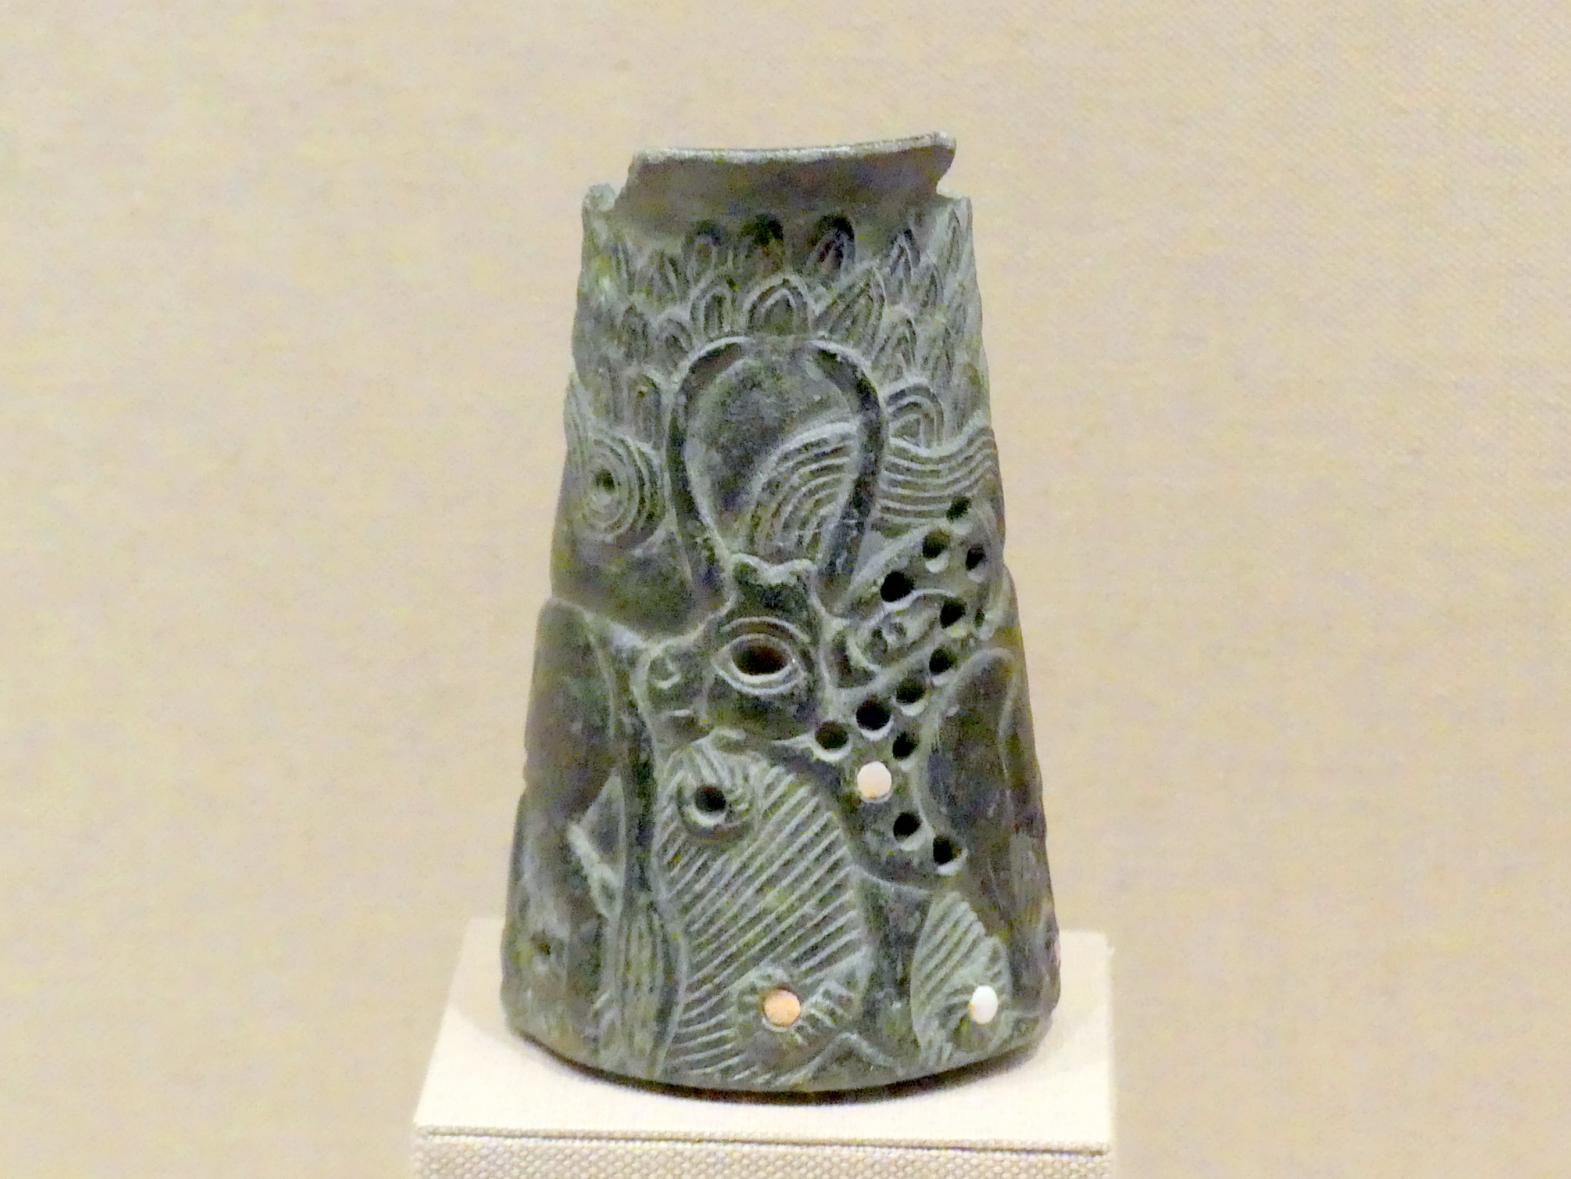 Gefäß mit zwei Zebus, Frühdynastisch (Mesopotamien), 2900 - 2000 v. Chr., 2700 - 2350 v. Chr., Bild 1/2